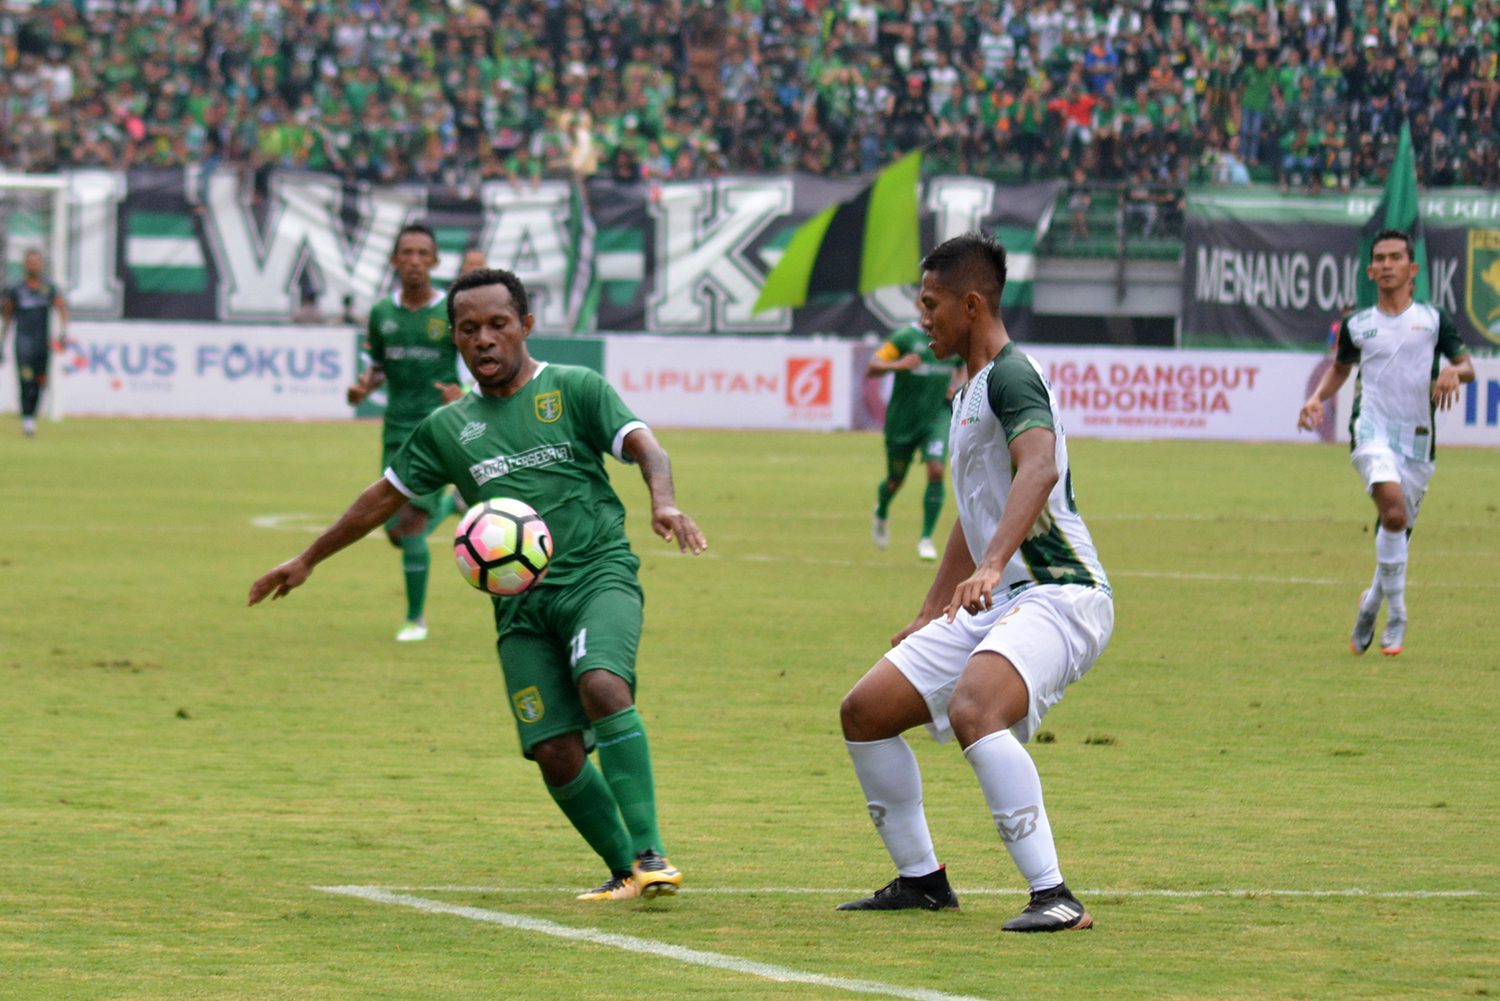 Pemain Persebaya Ferinando Pahabol saat mencoba melewati pemain PS TNI. (foto: hrs/ngopibareng)